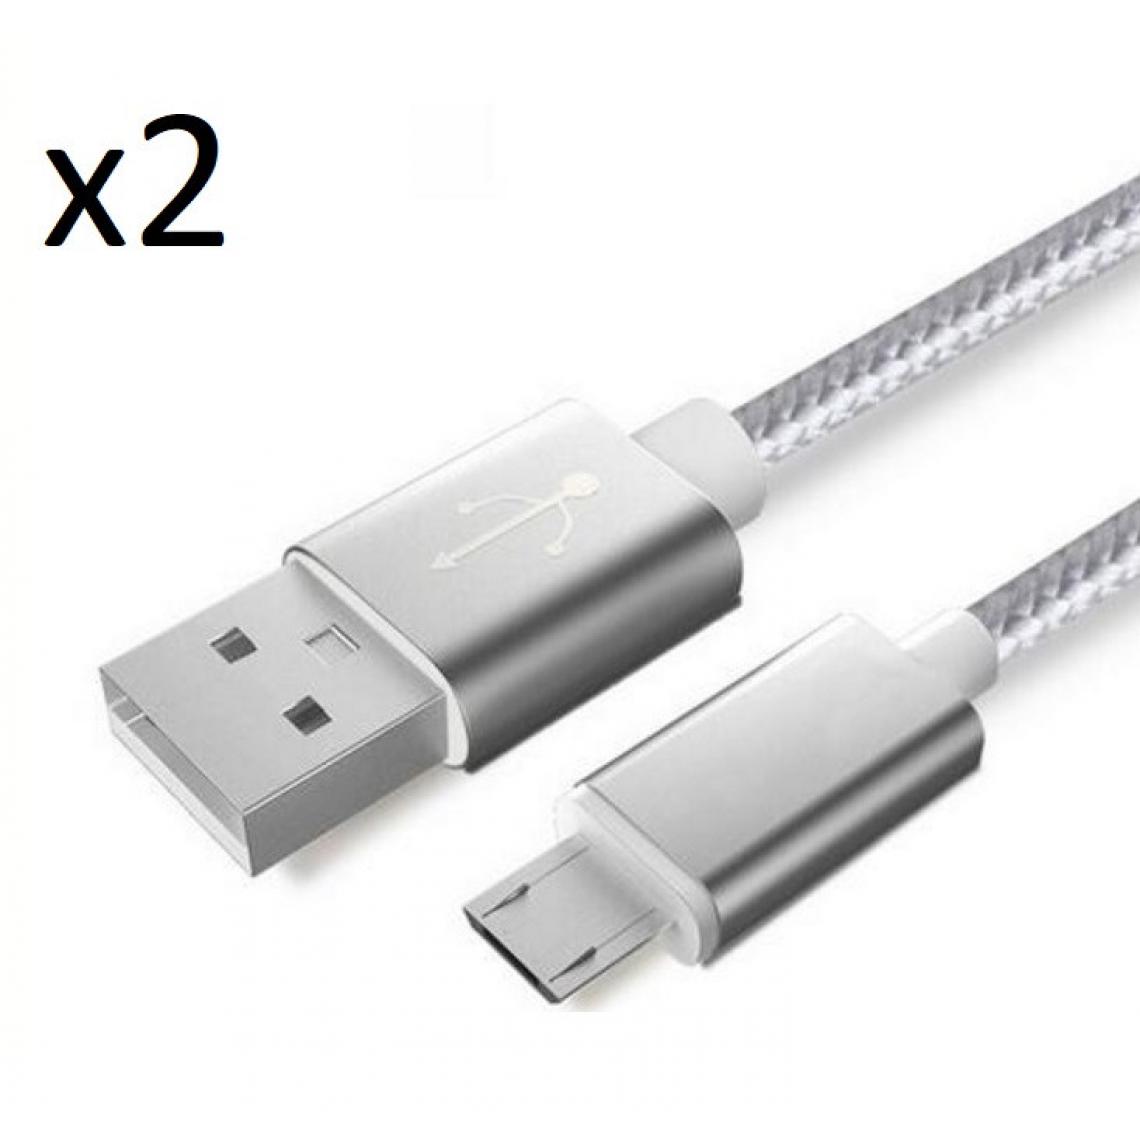 Shot - Pack de 2 Cables Metal Nylon Micro USB pour GIONEE F9 PLUS Smartphone Android Chargeur (ARGENT) - Chargeur secteur téléphone